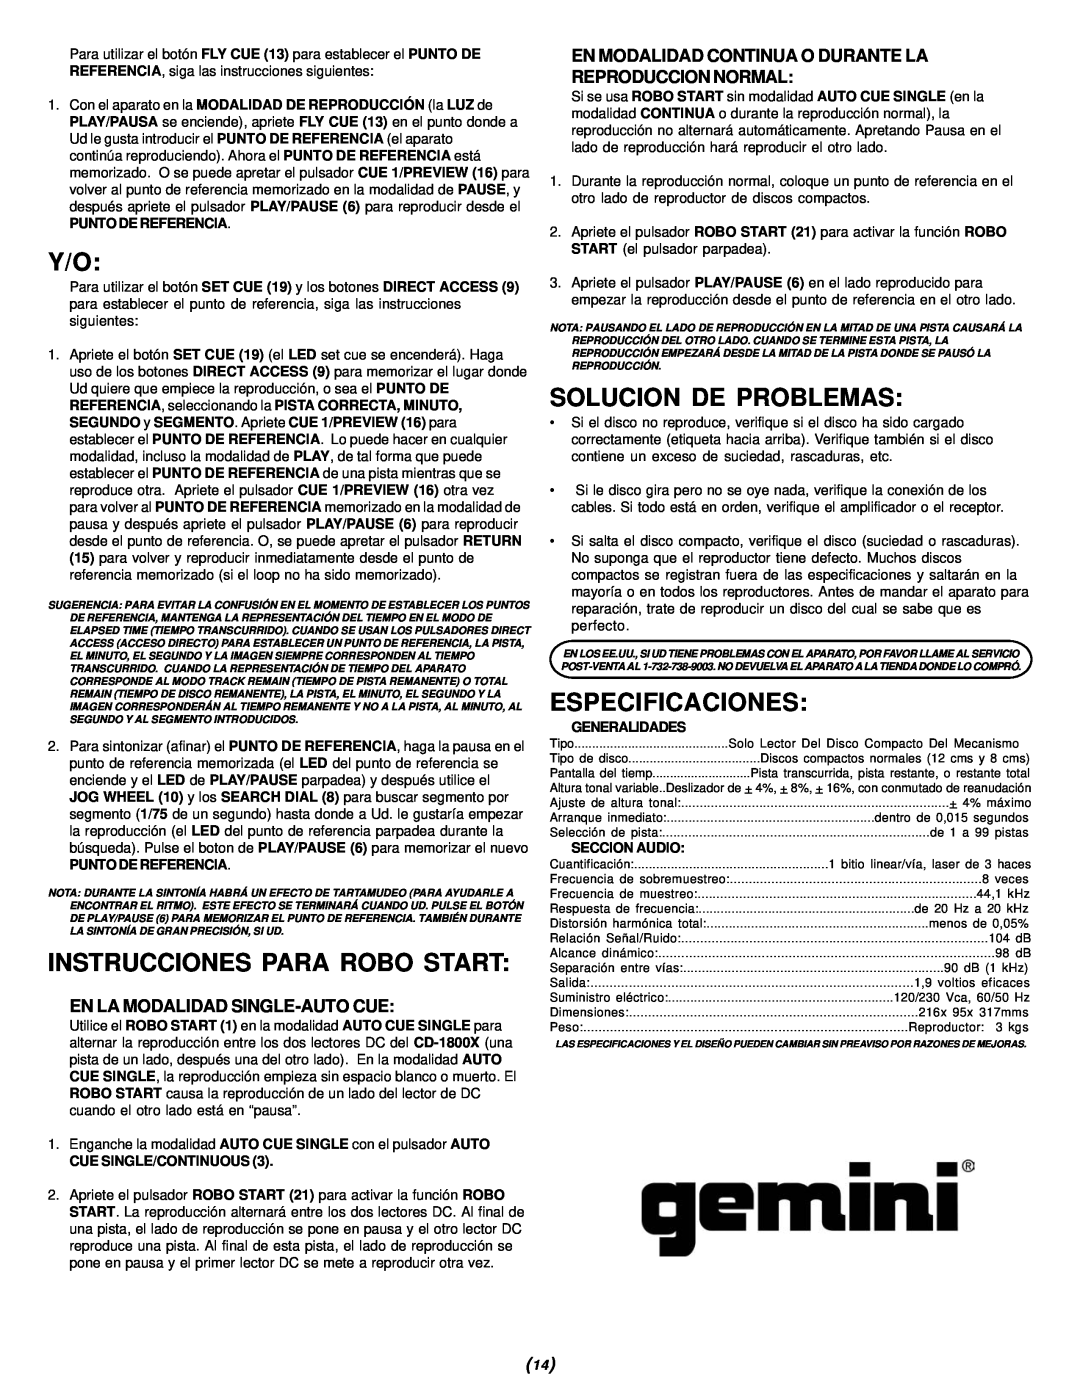 Gemini CD-1800X Instrucciones Para Robo Start, Solucion De Problemas, Especificaciones, En La Modalidad Single-Autocue 